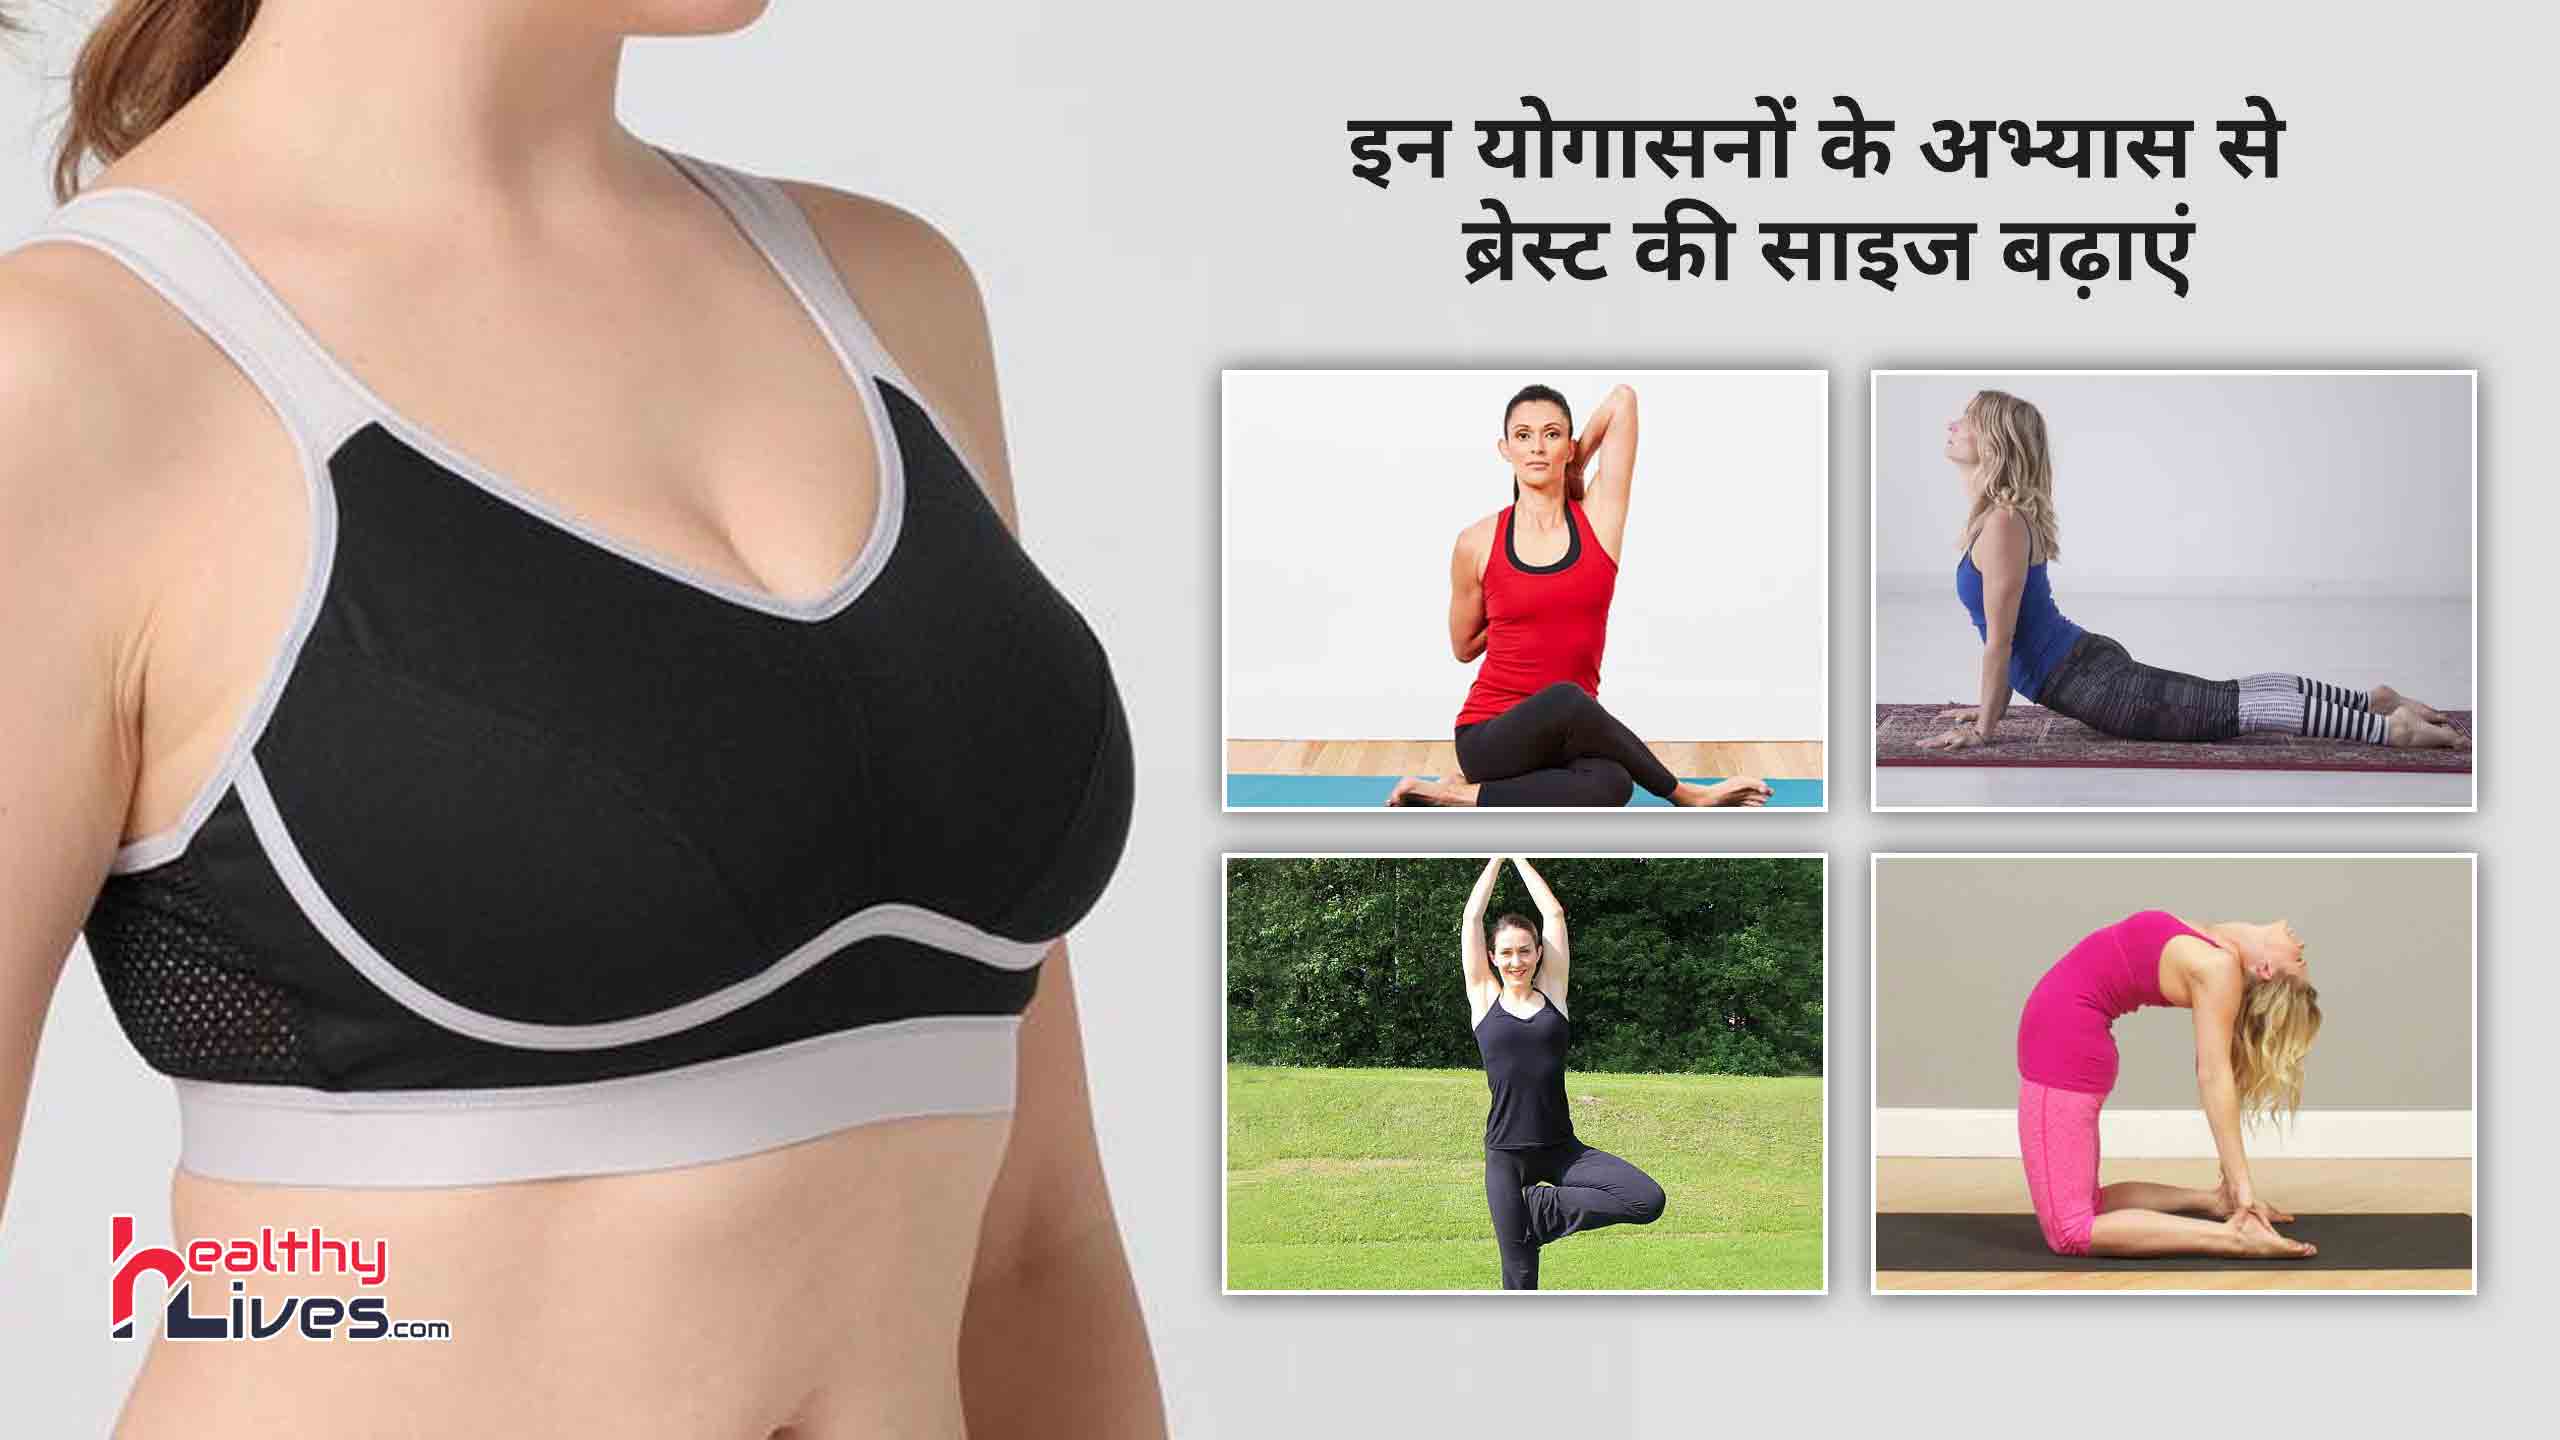 Yoga For Breast Increase: प्राकृतिक तरीके से स्तनों को बढ़ाने में लाभकारी होता है योग